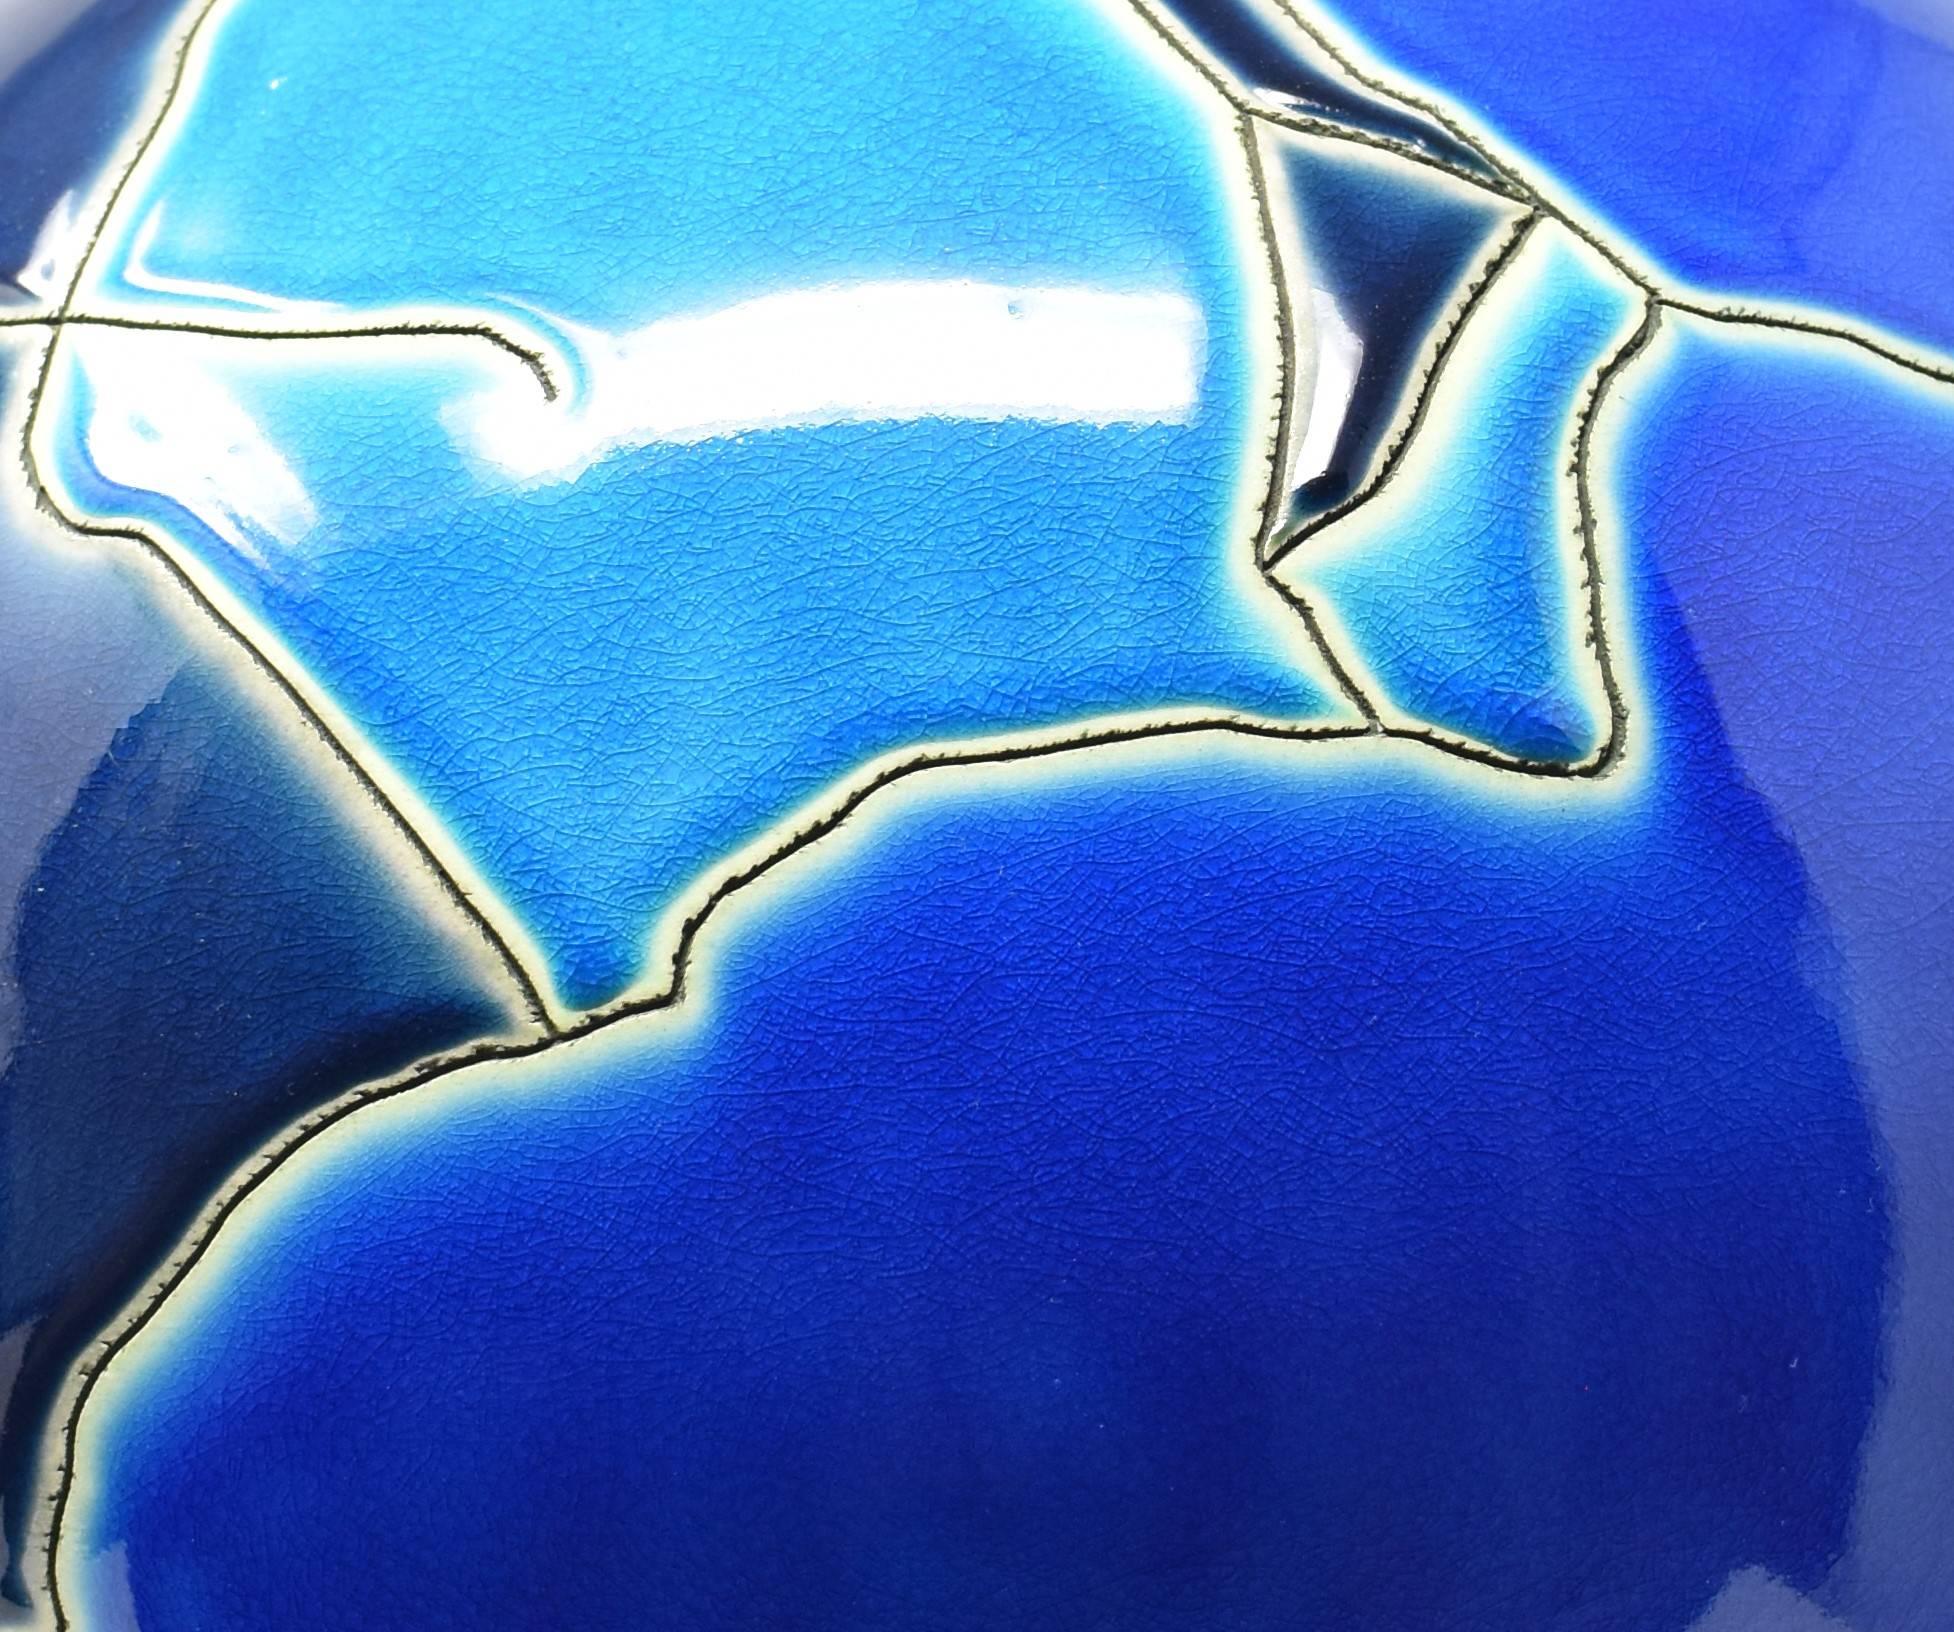 Außergewöhnliche Tischlampe aus japanischem Porzellan, ein atemberaubendes Meisterwerk, handbemalt, handglasiert und kantig auf einem großen kugelförmigen Körper in Schwarz, Marine-, Königs- und Hellblau mit tiefen Ätzungen, um ein auffallend